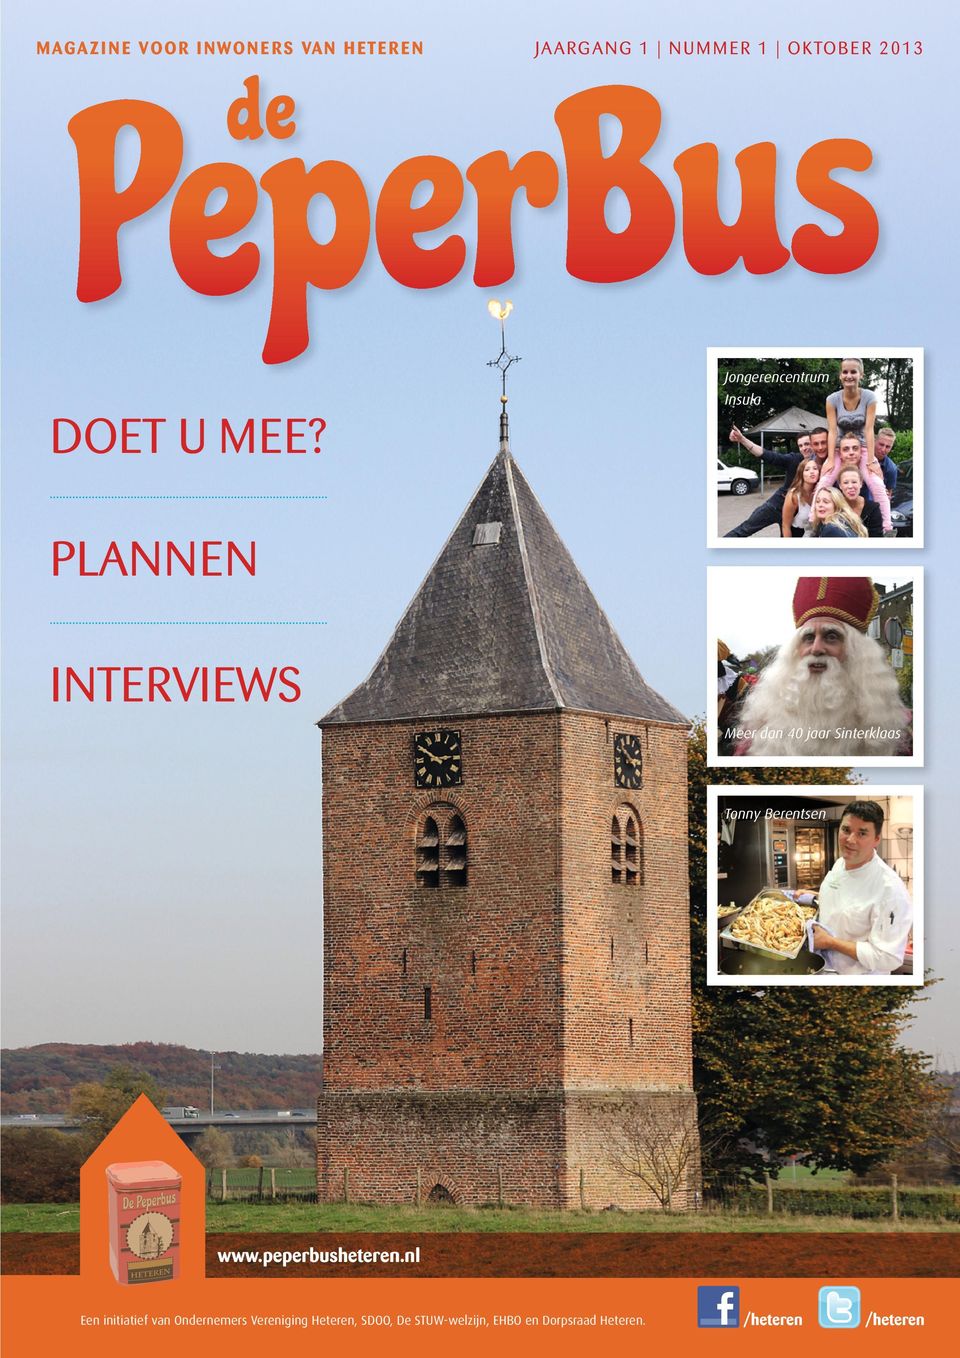 PLANNEN INTERVIEWS Meer dan 40 jaar Sinterklaas Tonny Berentsen www.peperbusheteren.